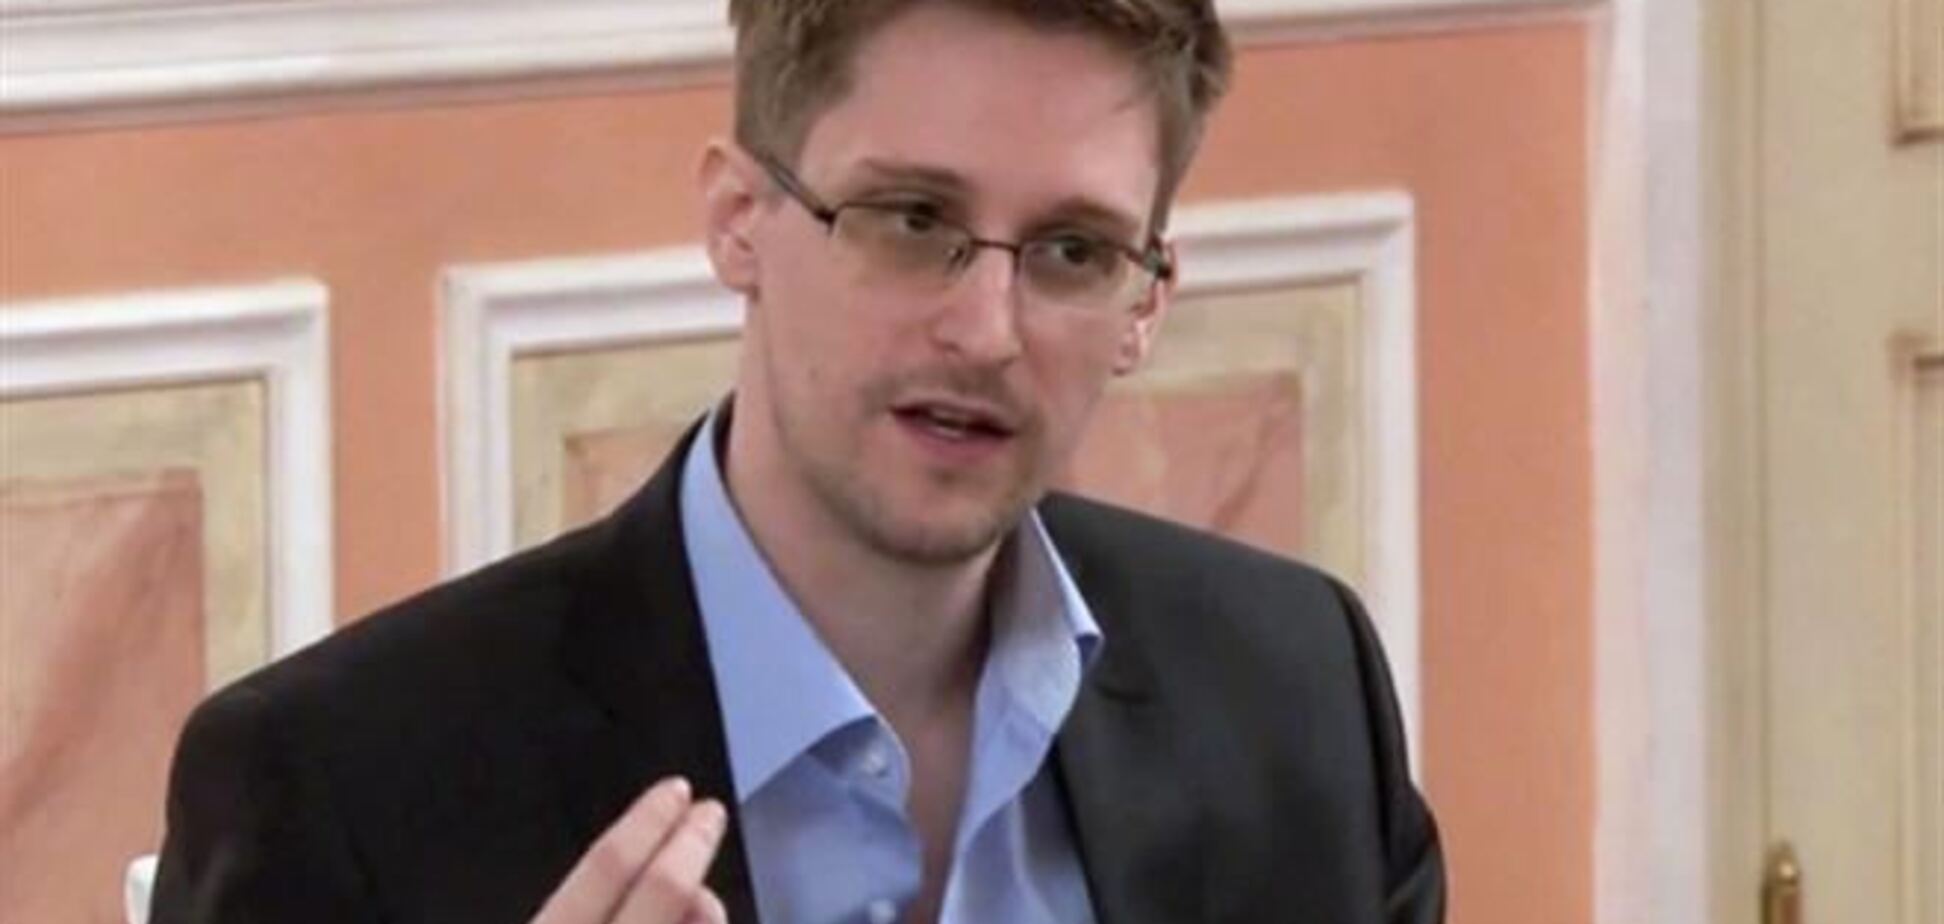 ЗМІ: у Сноудена є матеріали про шпигунство США проти Росії